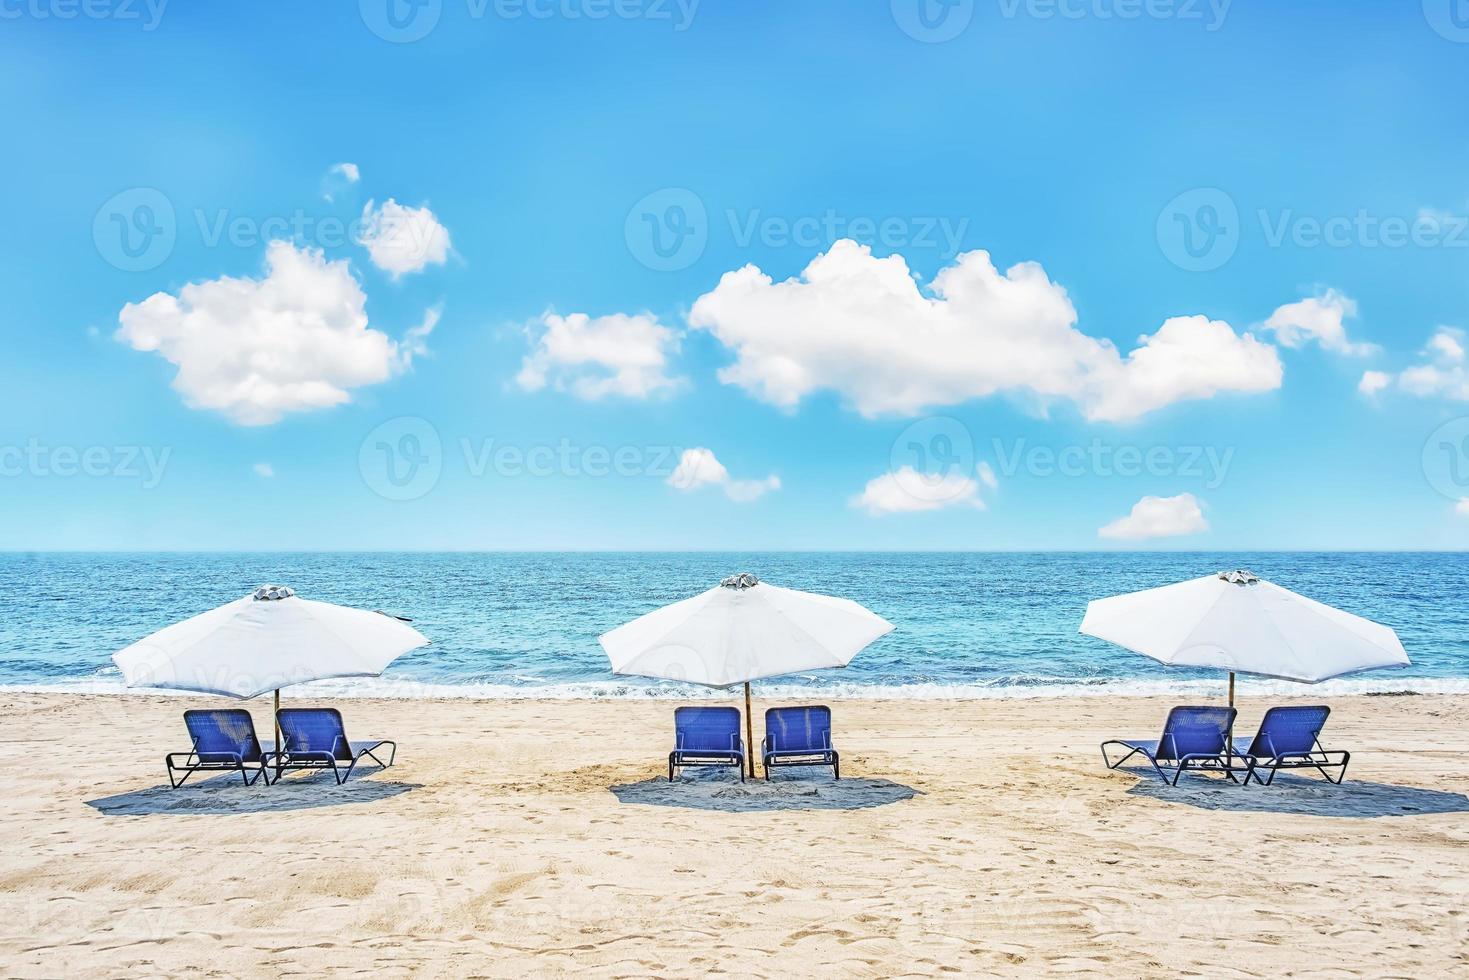 stolar och paraplyer på en tropisk strand foto